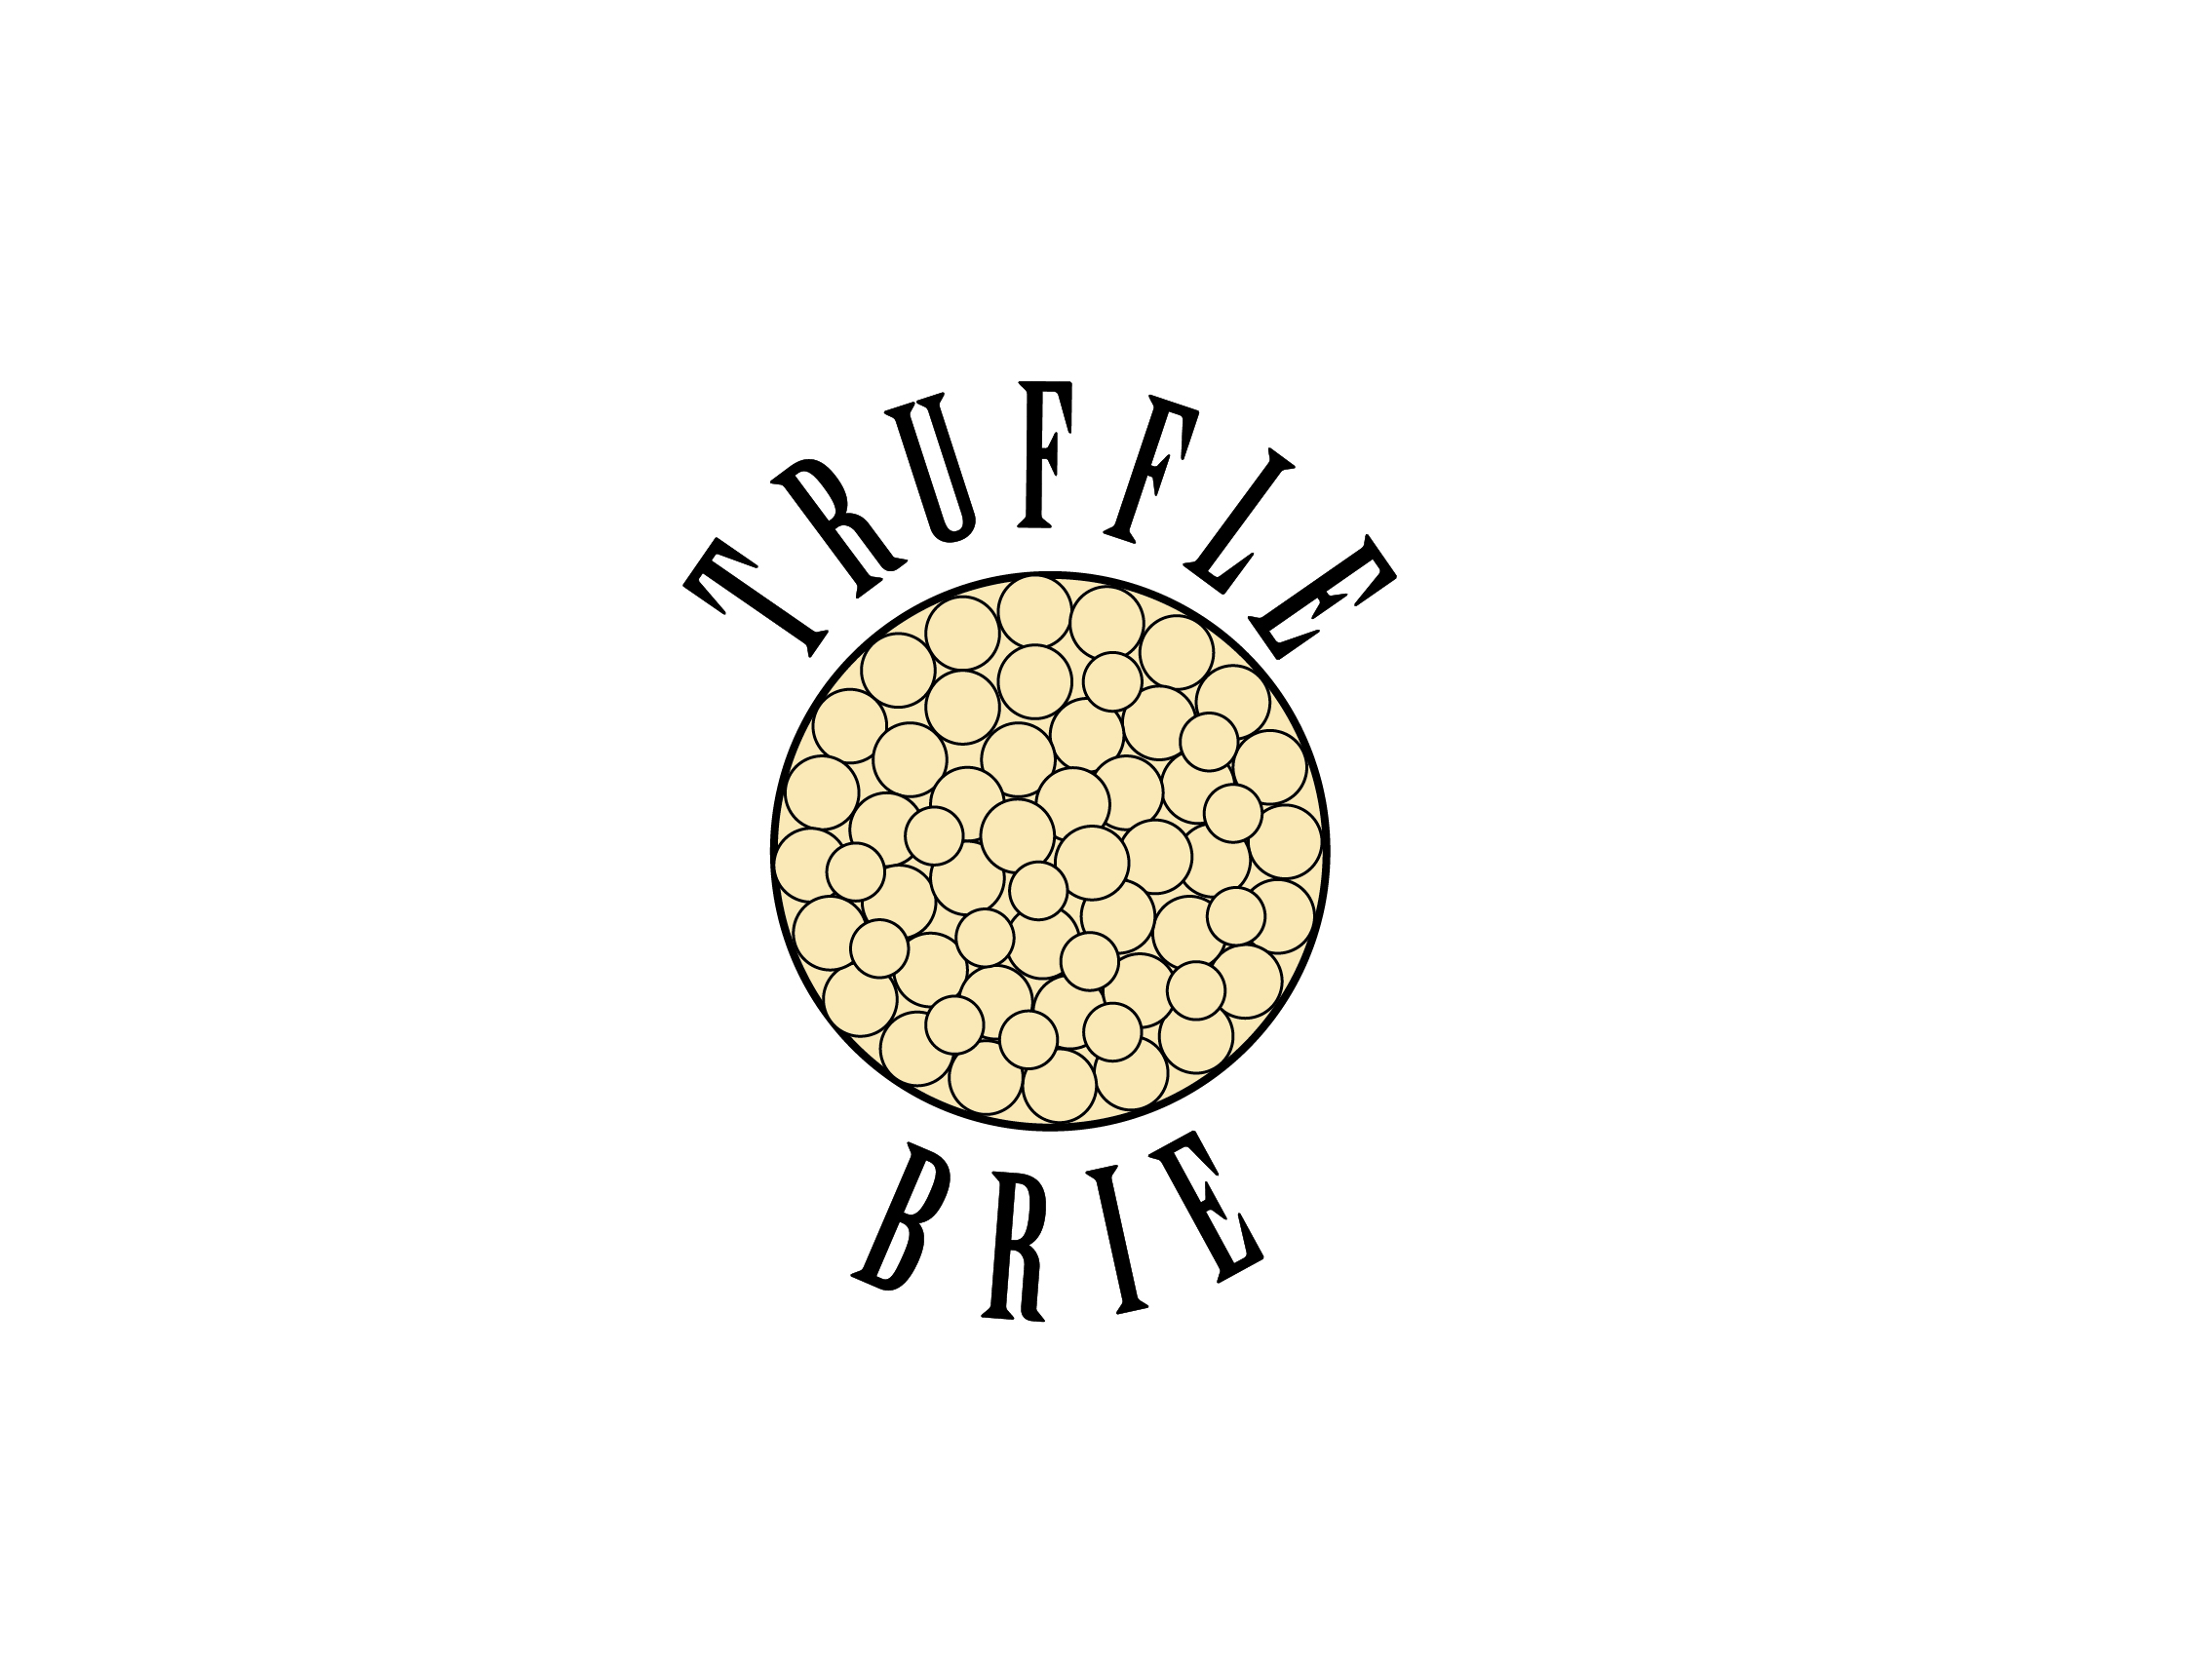 Truffle Brie